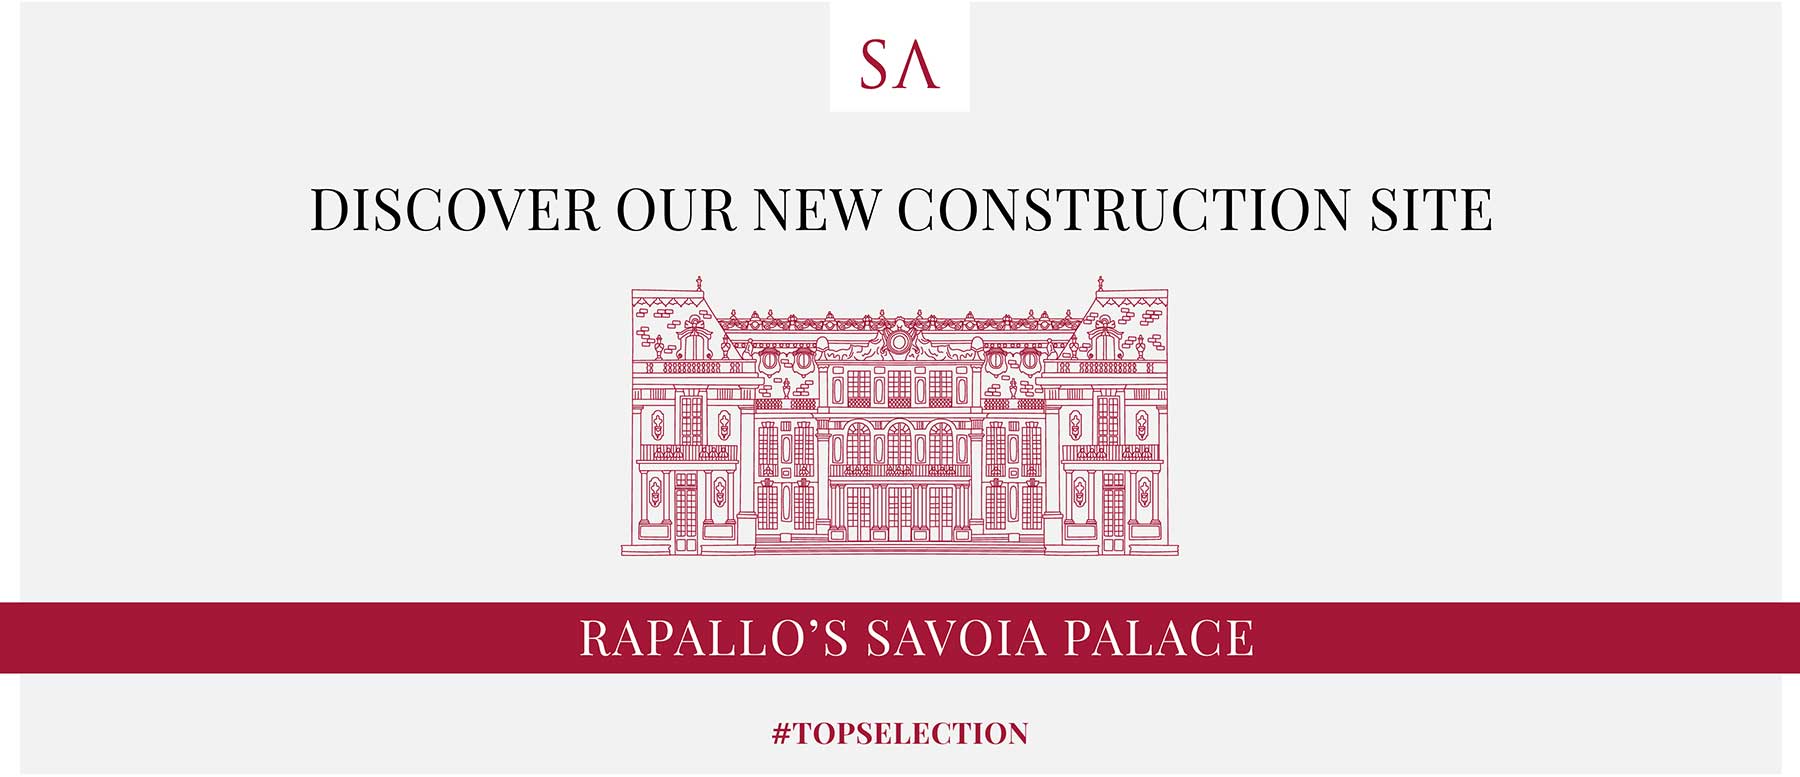 Al via la commercializzazione del Savoia Palace di Rapallo